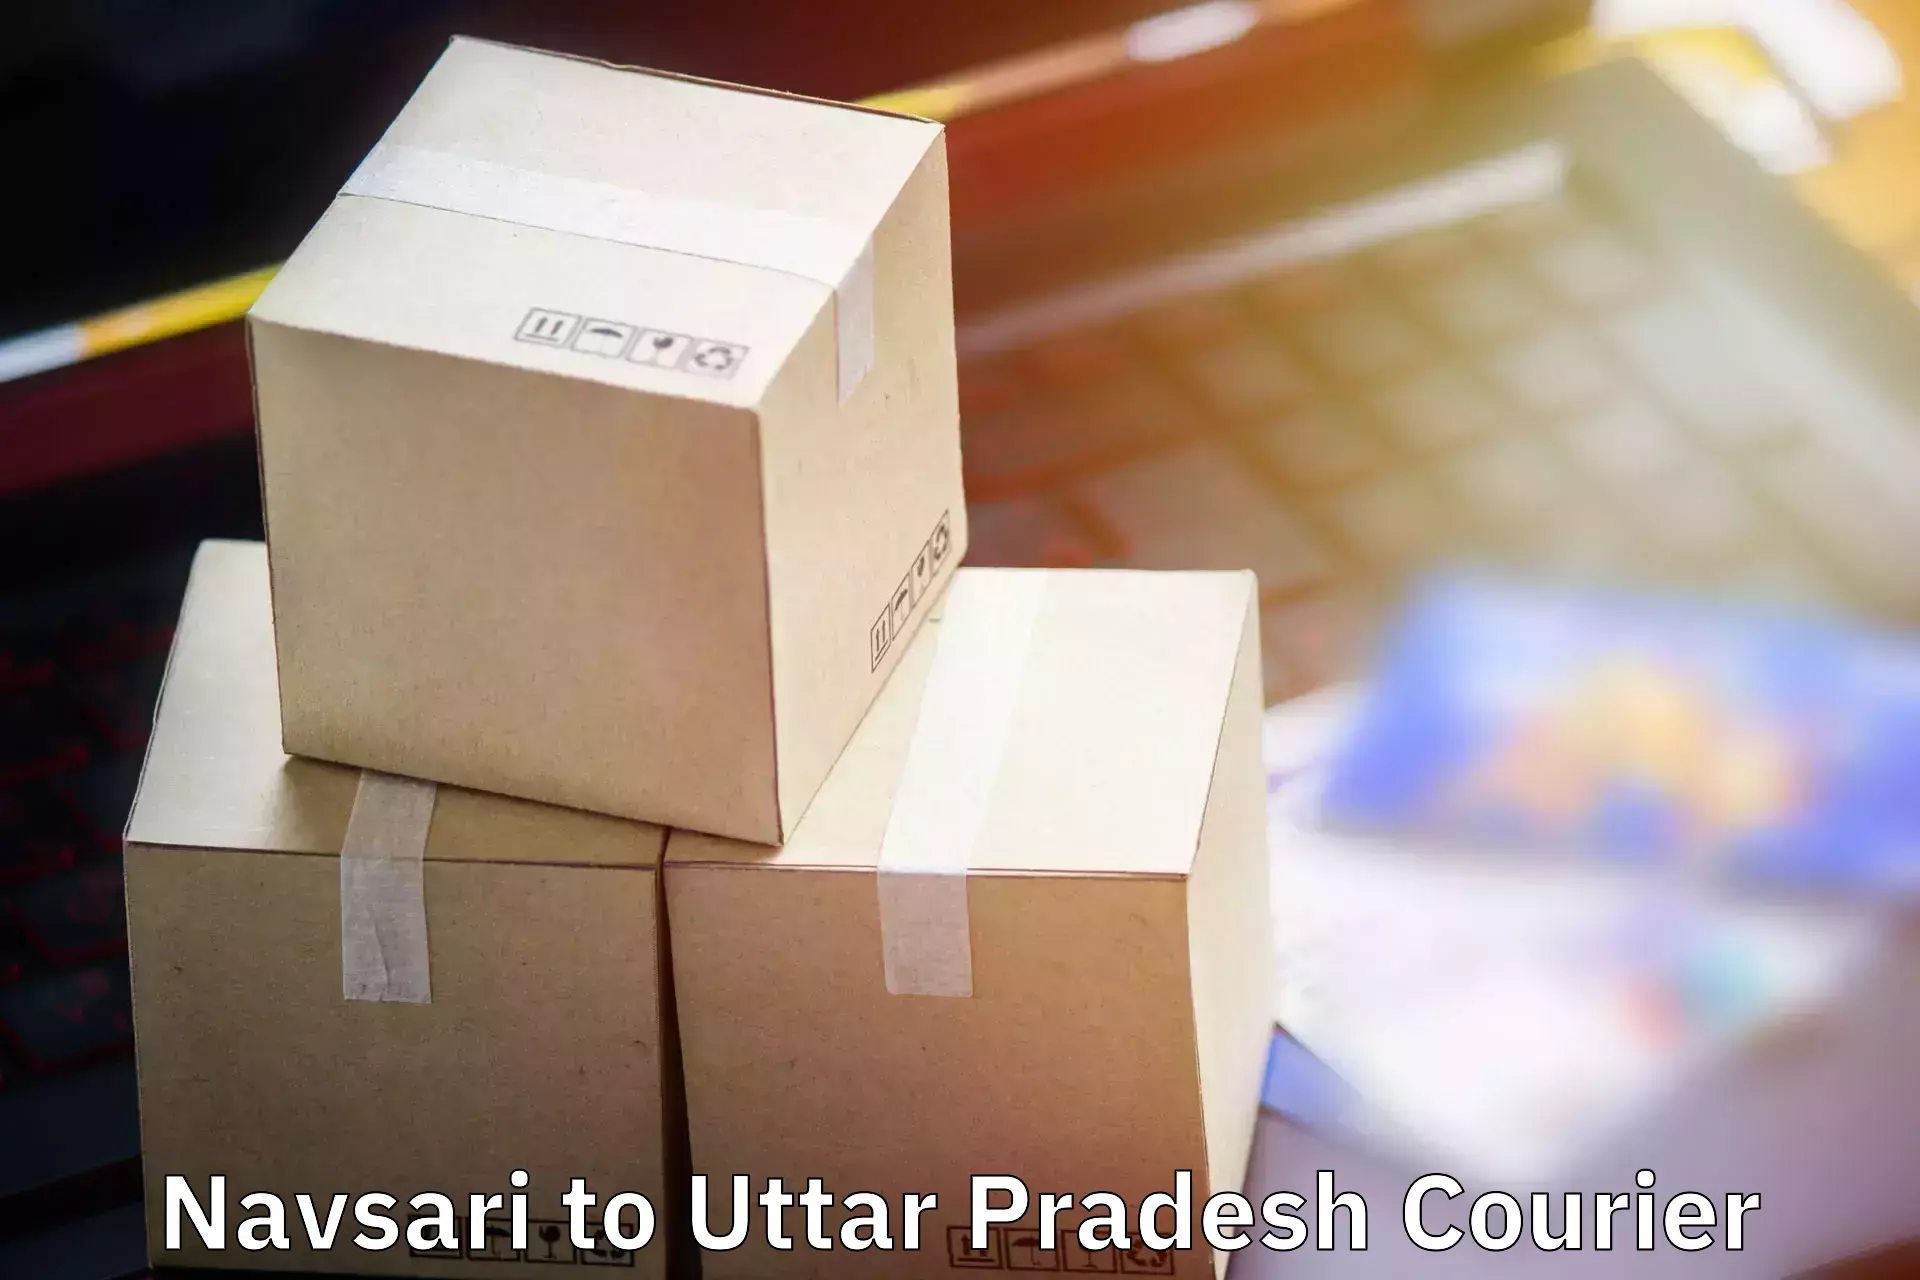 Luggage delivery providers Navsari to Colonelganj